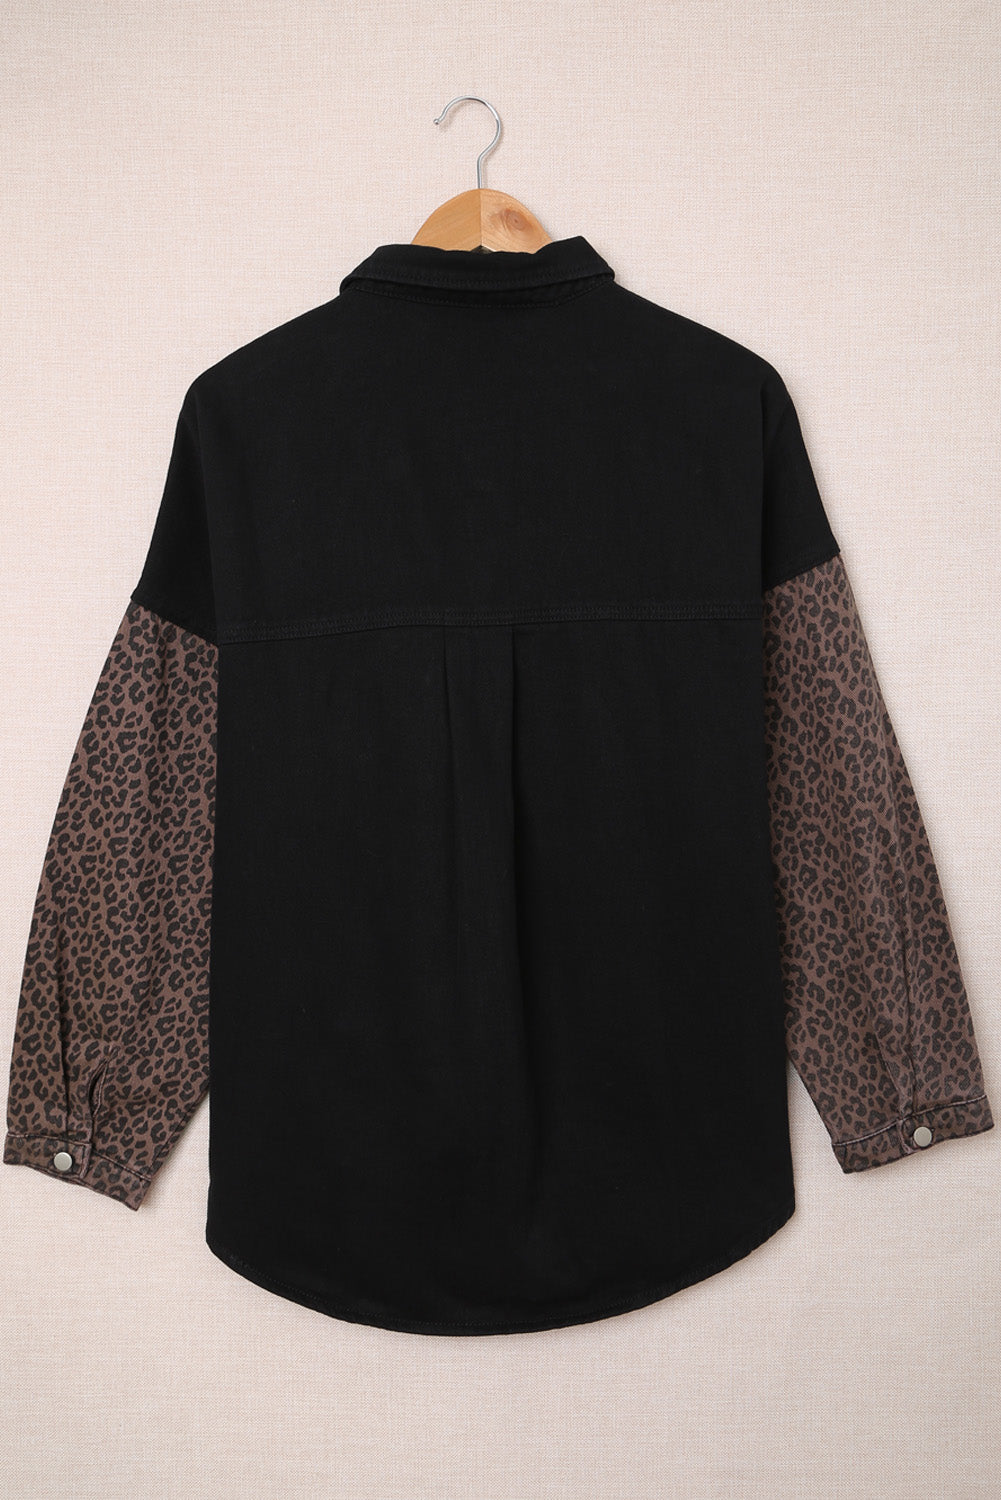 Crna traper jakna s leopardovim kontrastom